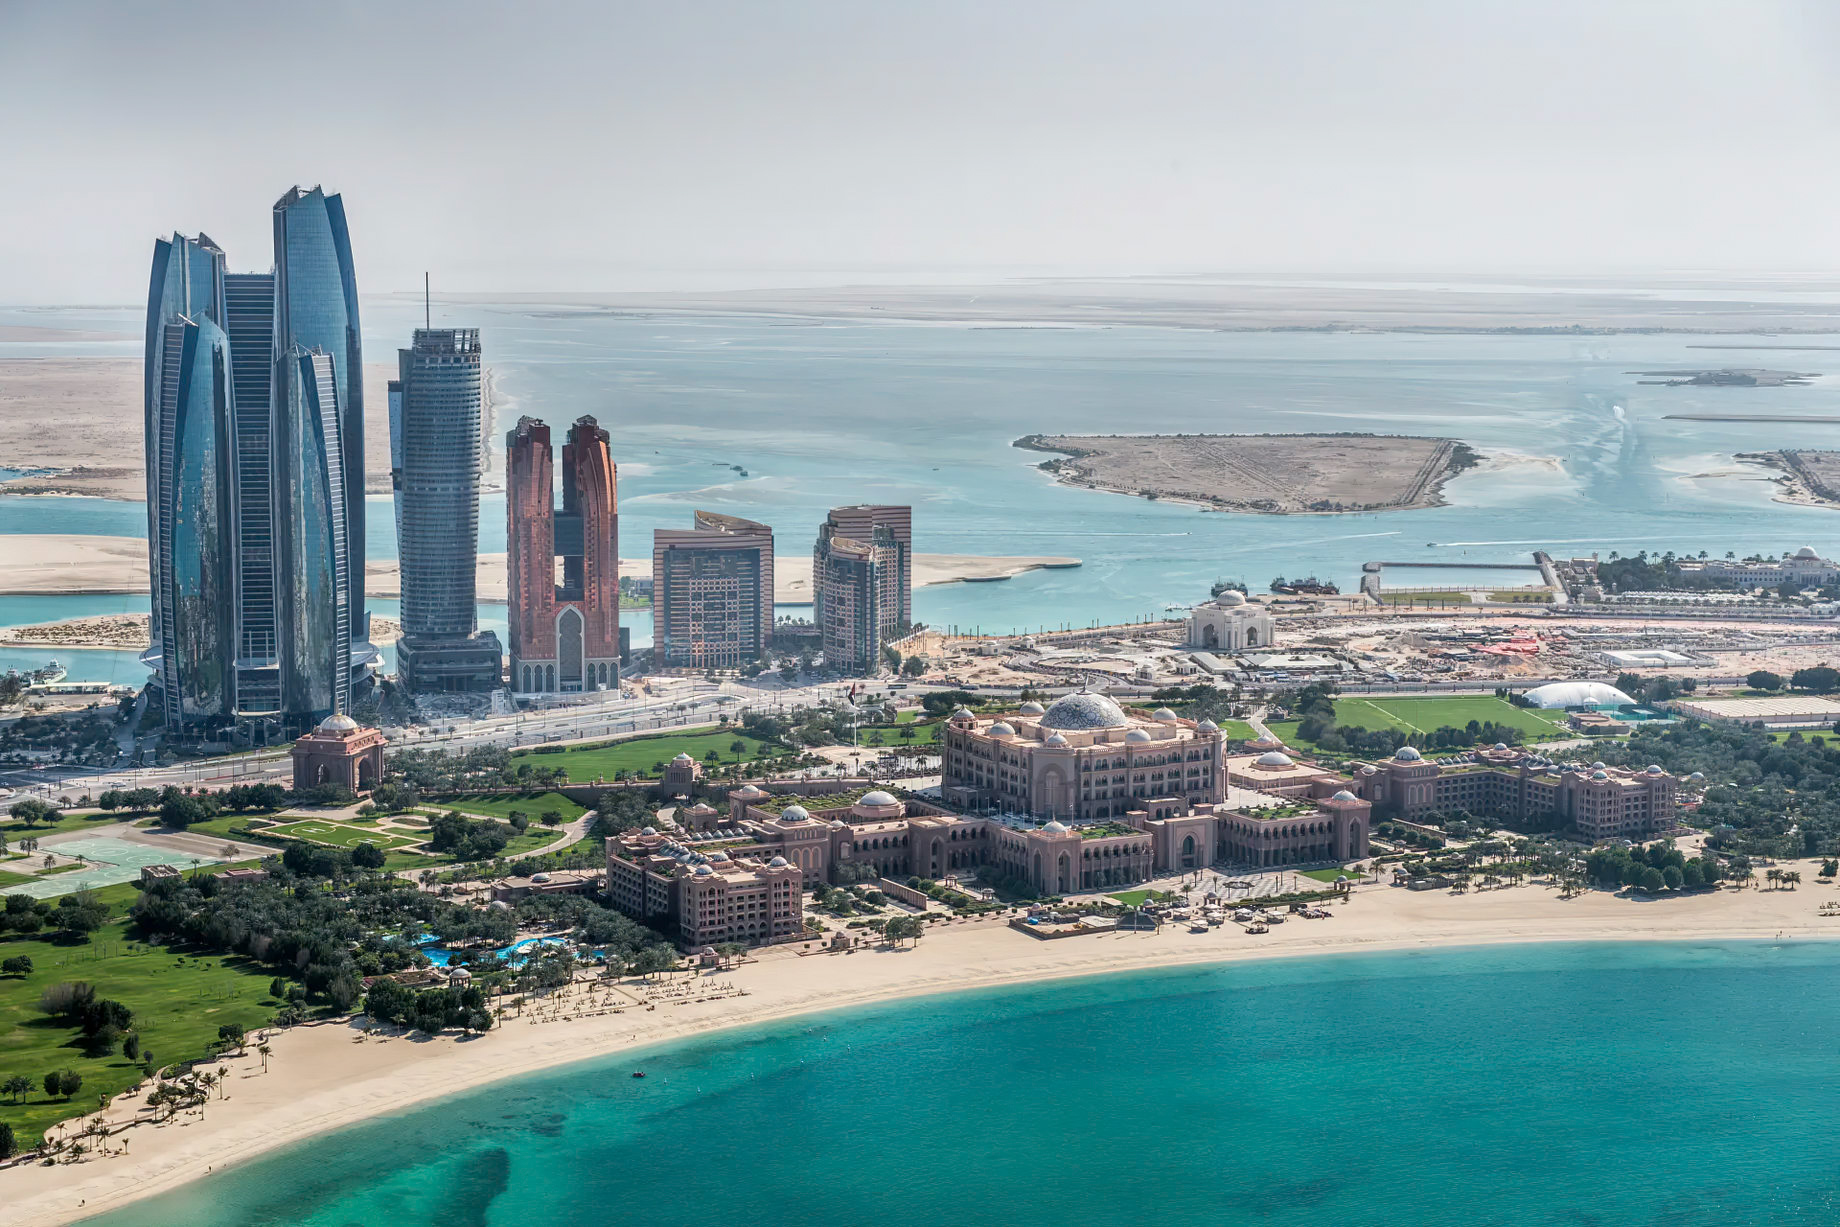 Emirates Palace Abu Dhabi Hotel – Abu Dhabi, UAE – Property Aerial View